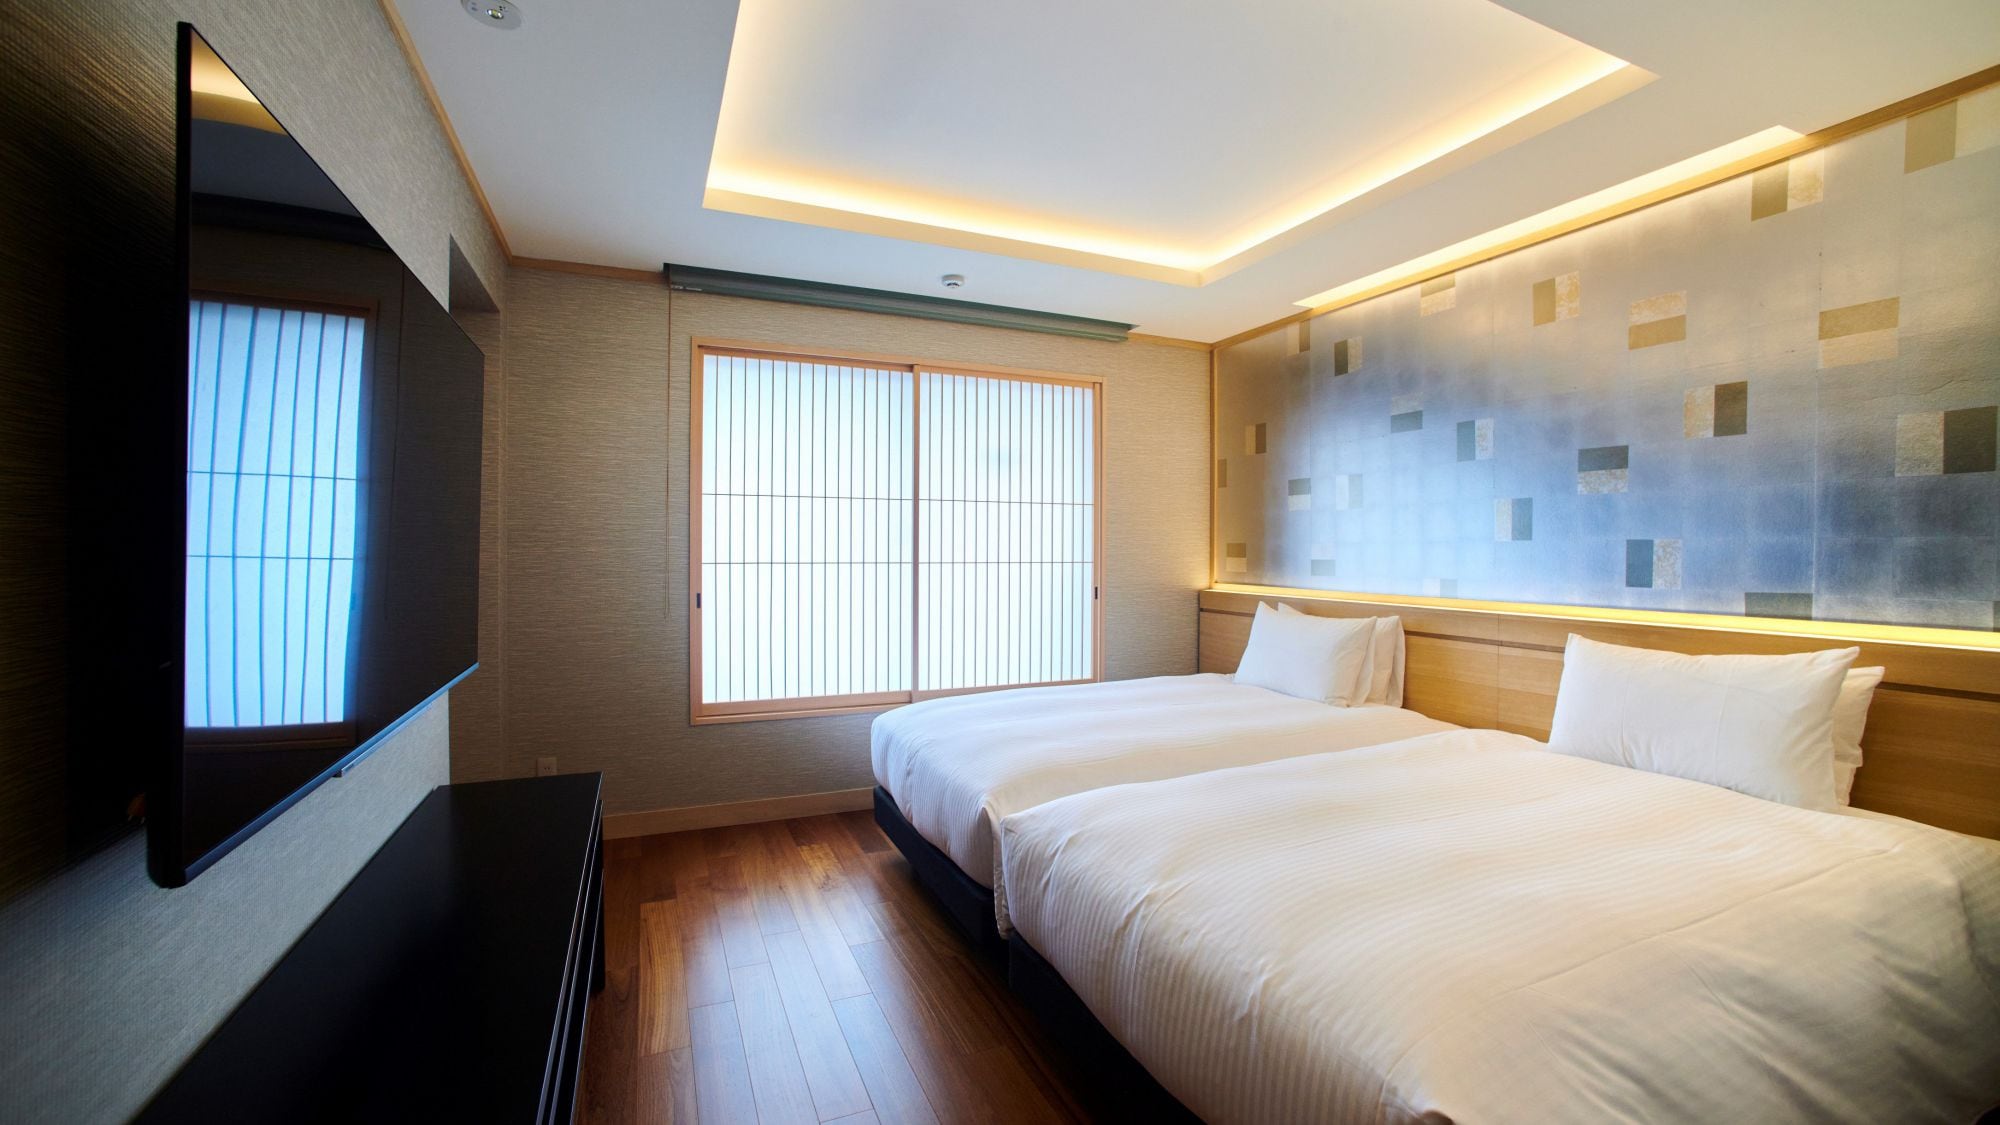 ■ Kamar Suite "Hotel Enoshima" "Kamar Junior Suite"